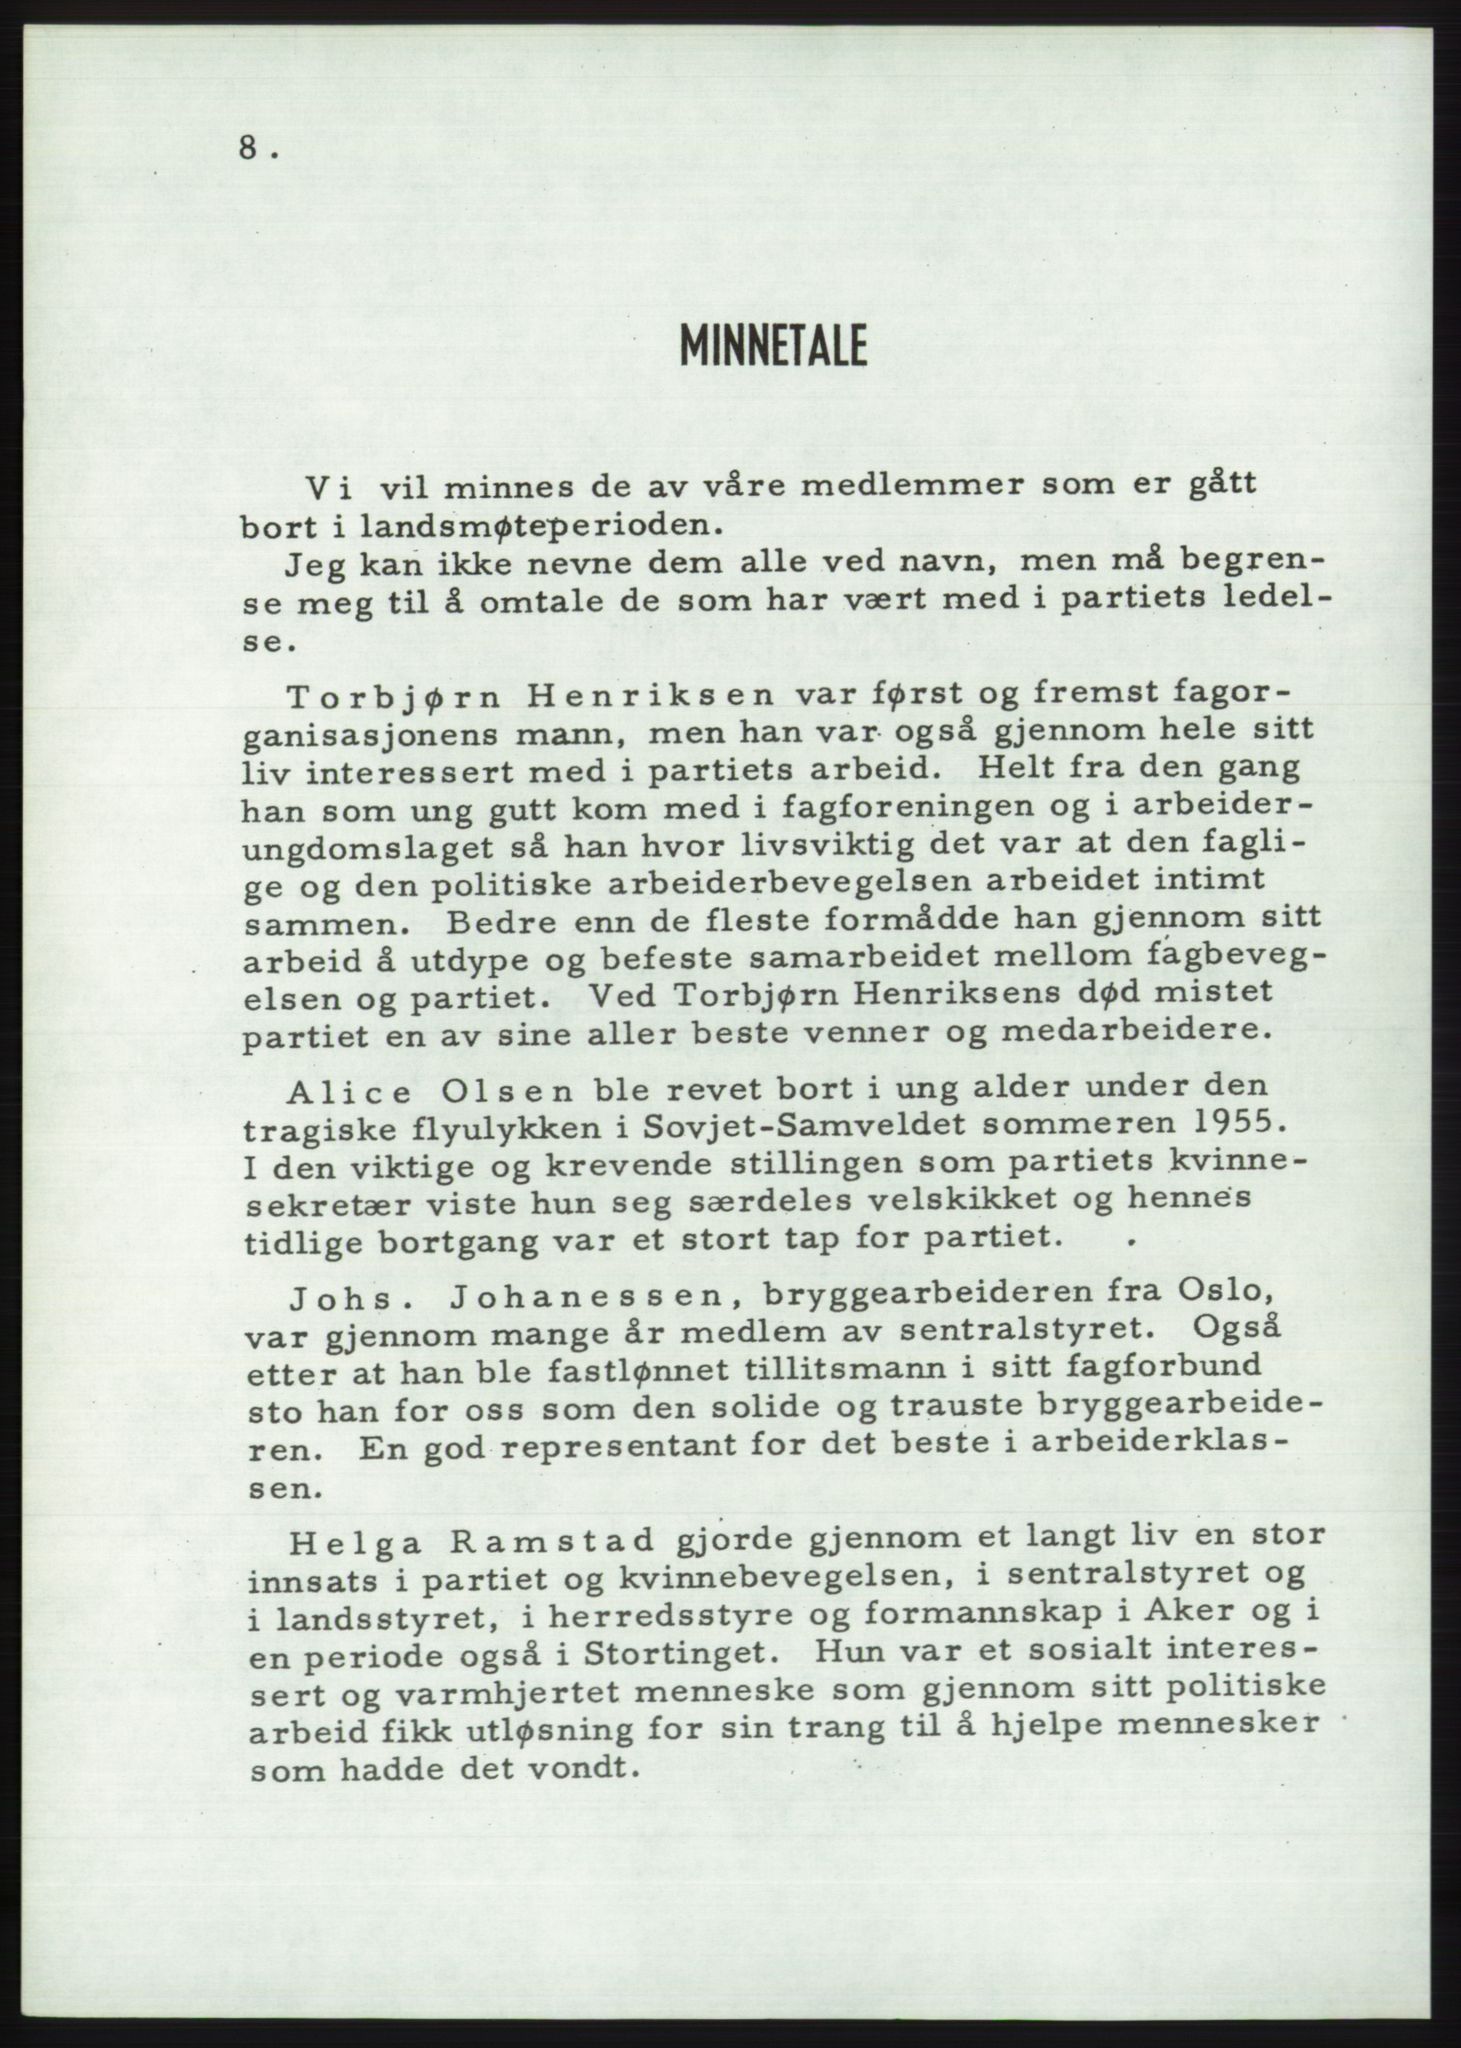 Det norske Arbeiderparti - publikasjoner, AAB/-/-/-: Protokoll over forhandlingene på det 36. ordinære landsmøte 30.-31. mai og 1. juni 1957 i Oslo, 1957, s. 8